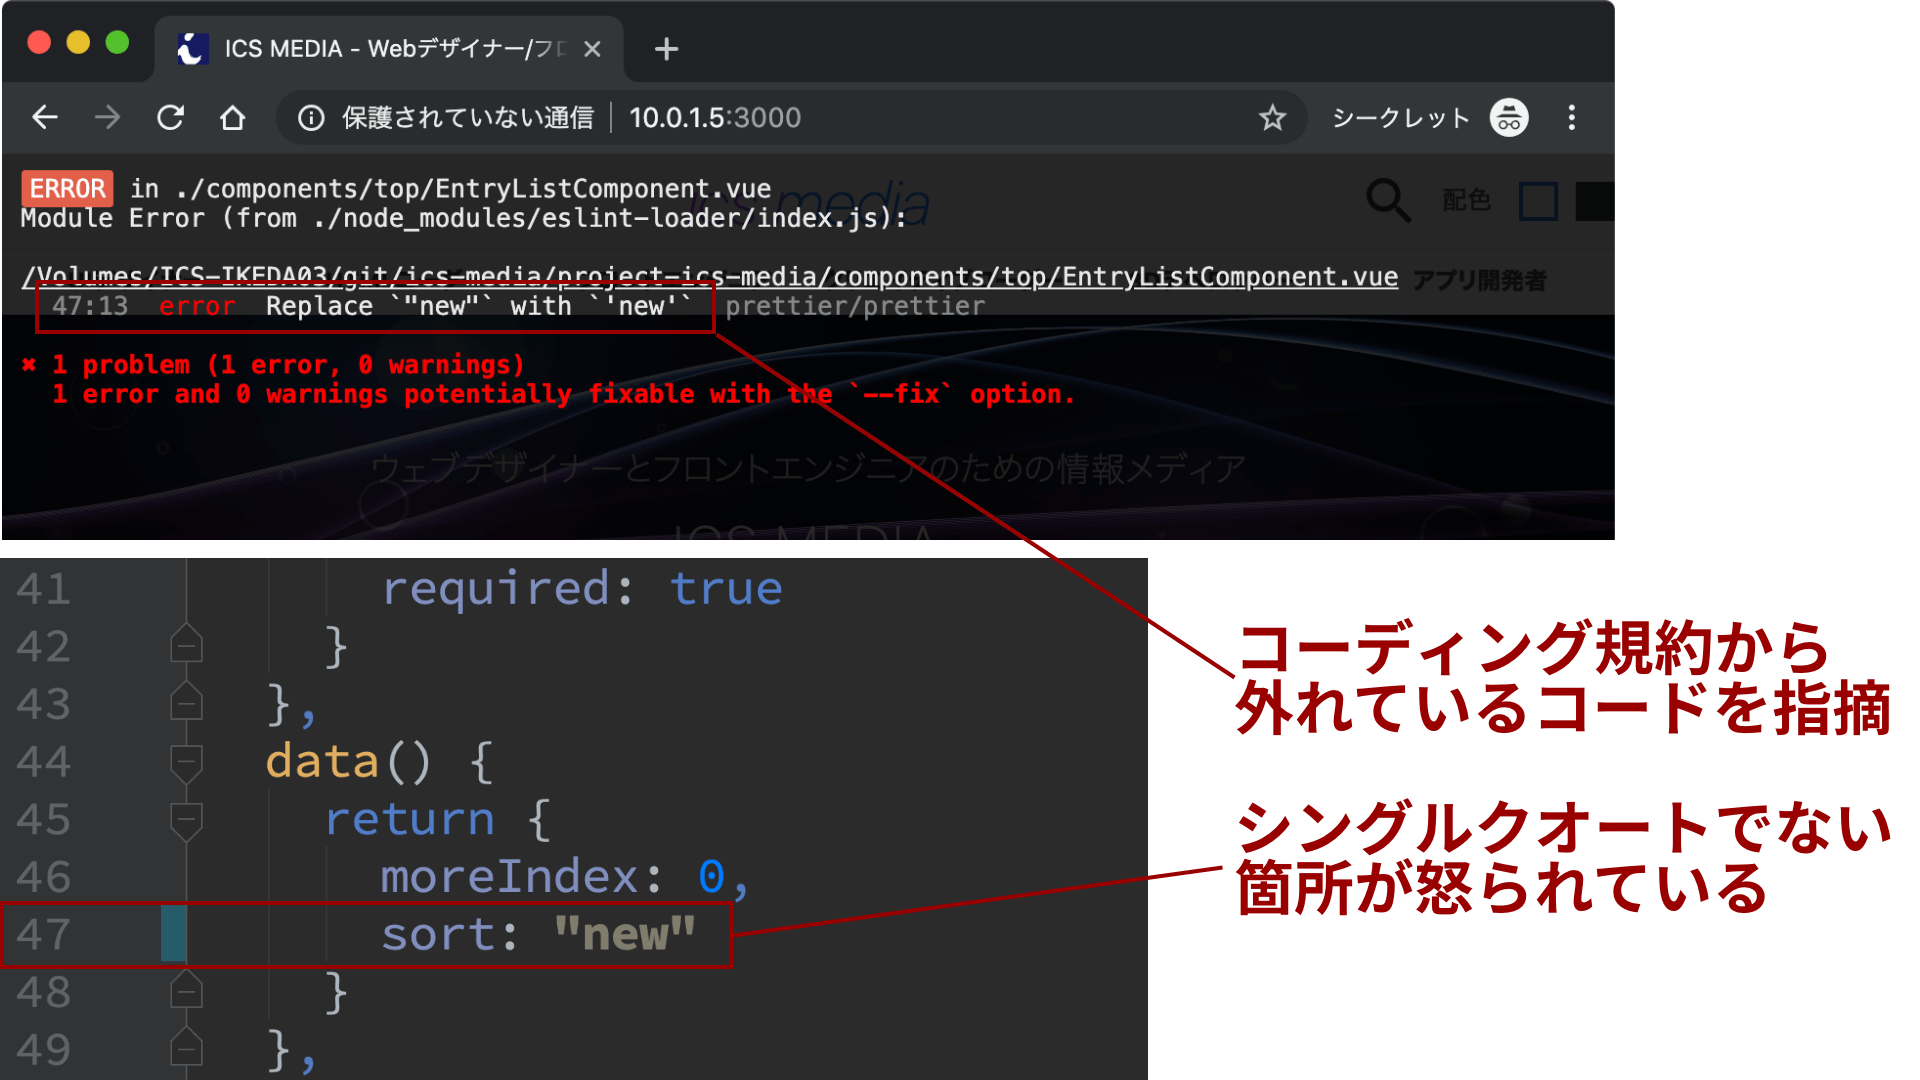 スクリーションショット：Nuxt.jsにはLintが組み込まれている